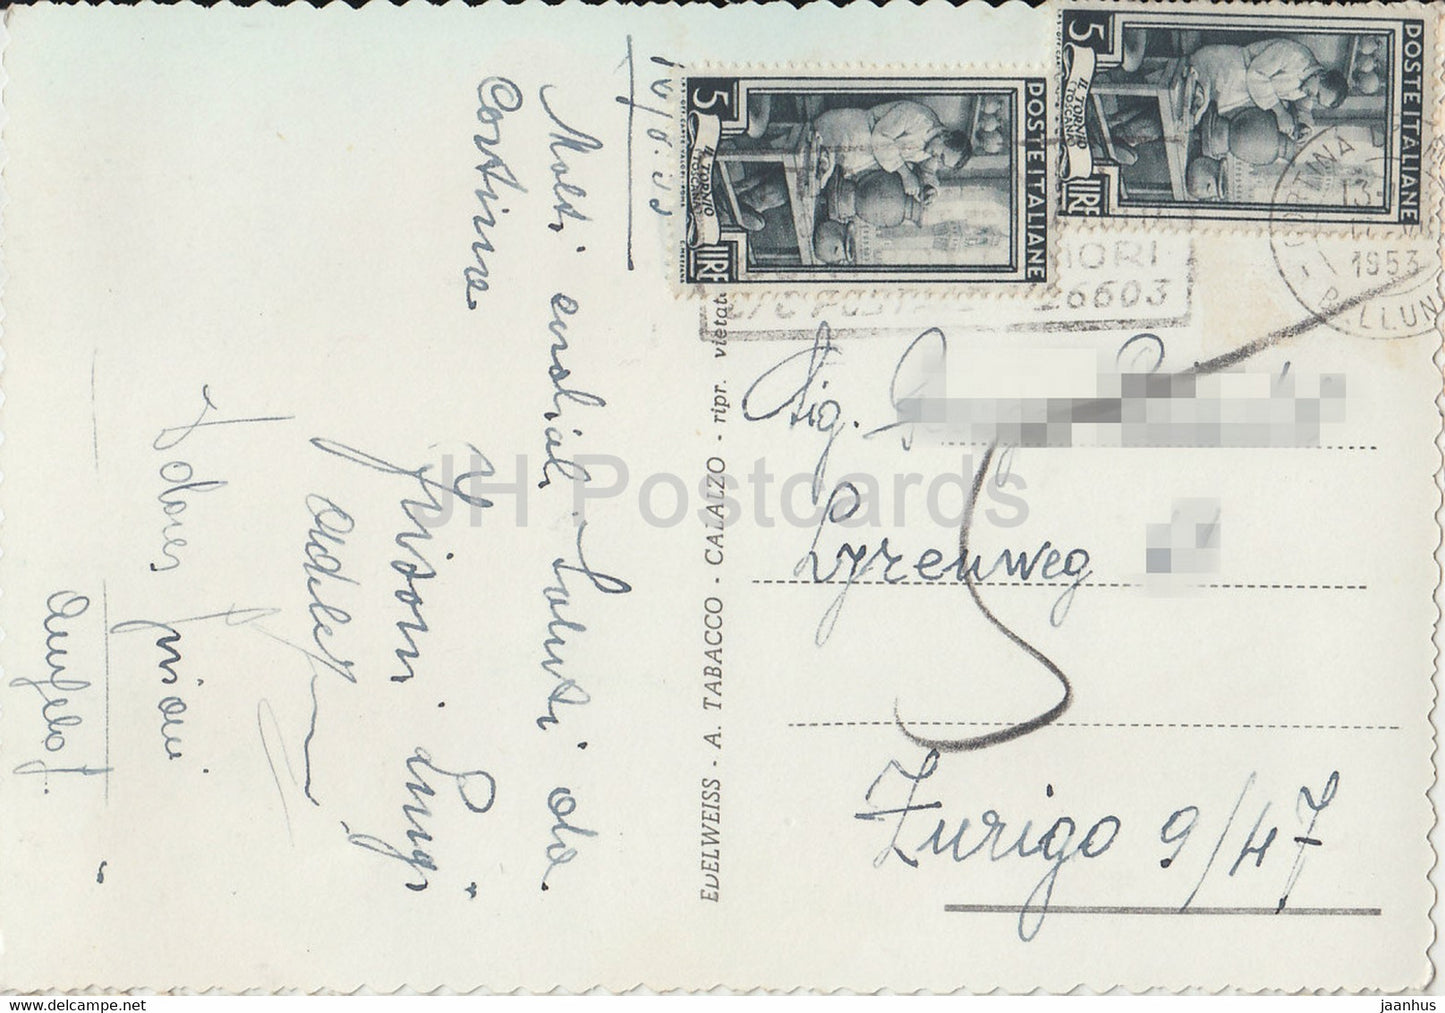 Cortina d'Ampezzo 1224 m - Panorama con le Tofane 3250 m - carte postale ancienne - 1953 - Italie - occasion